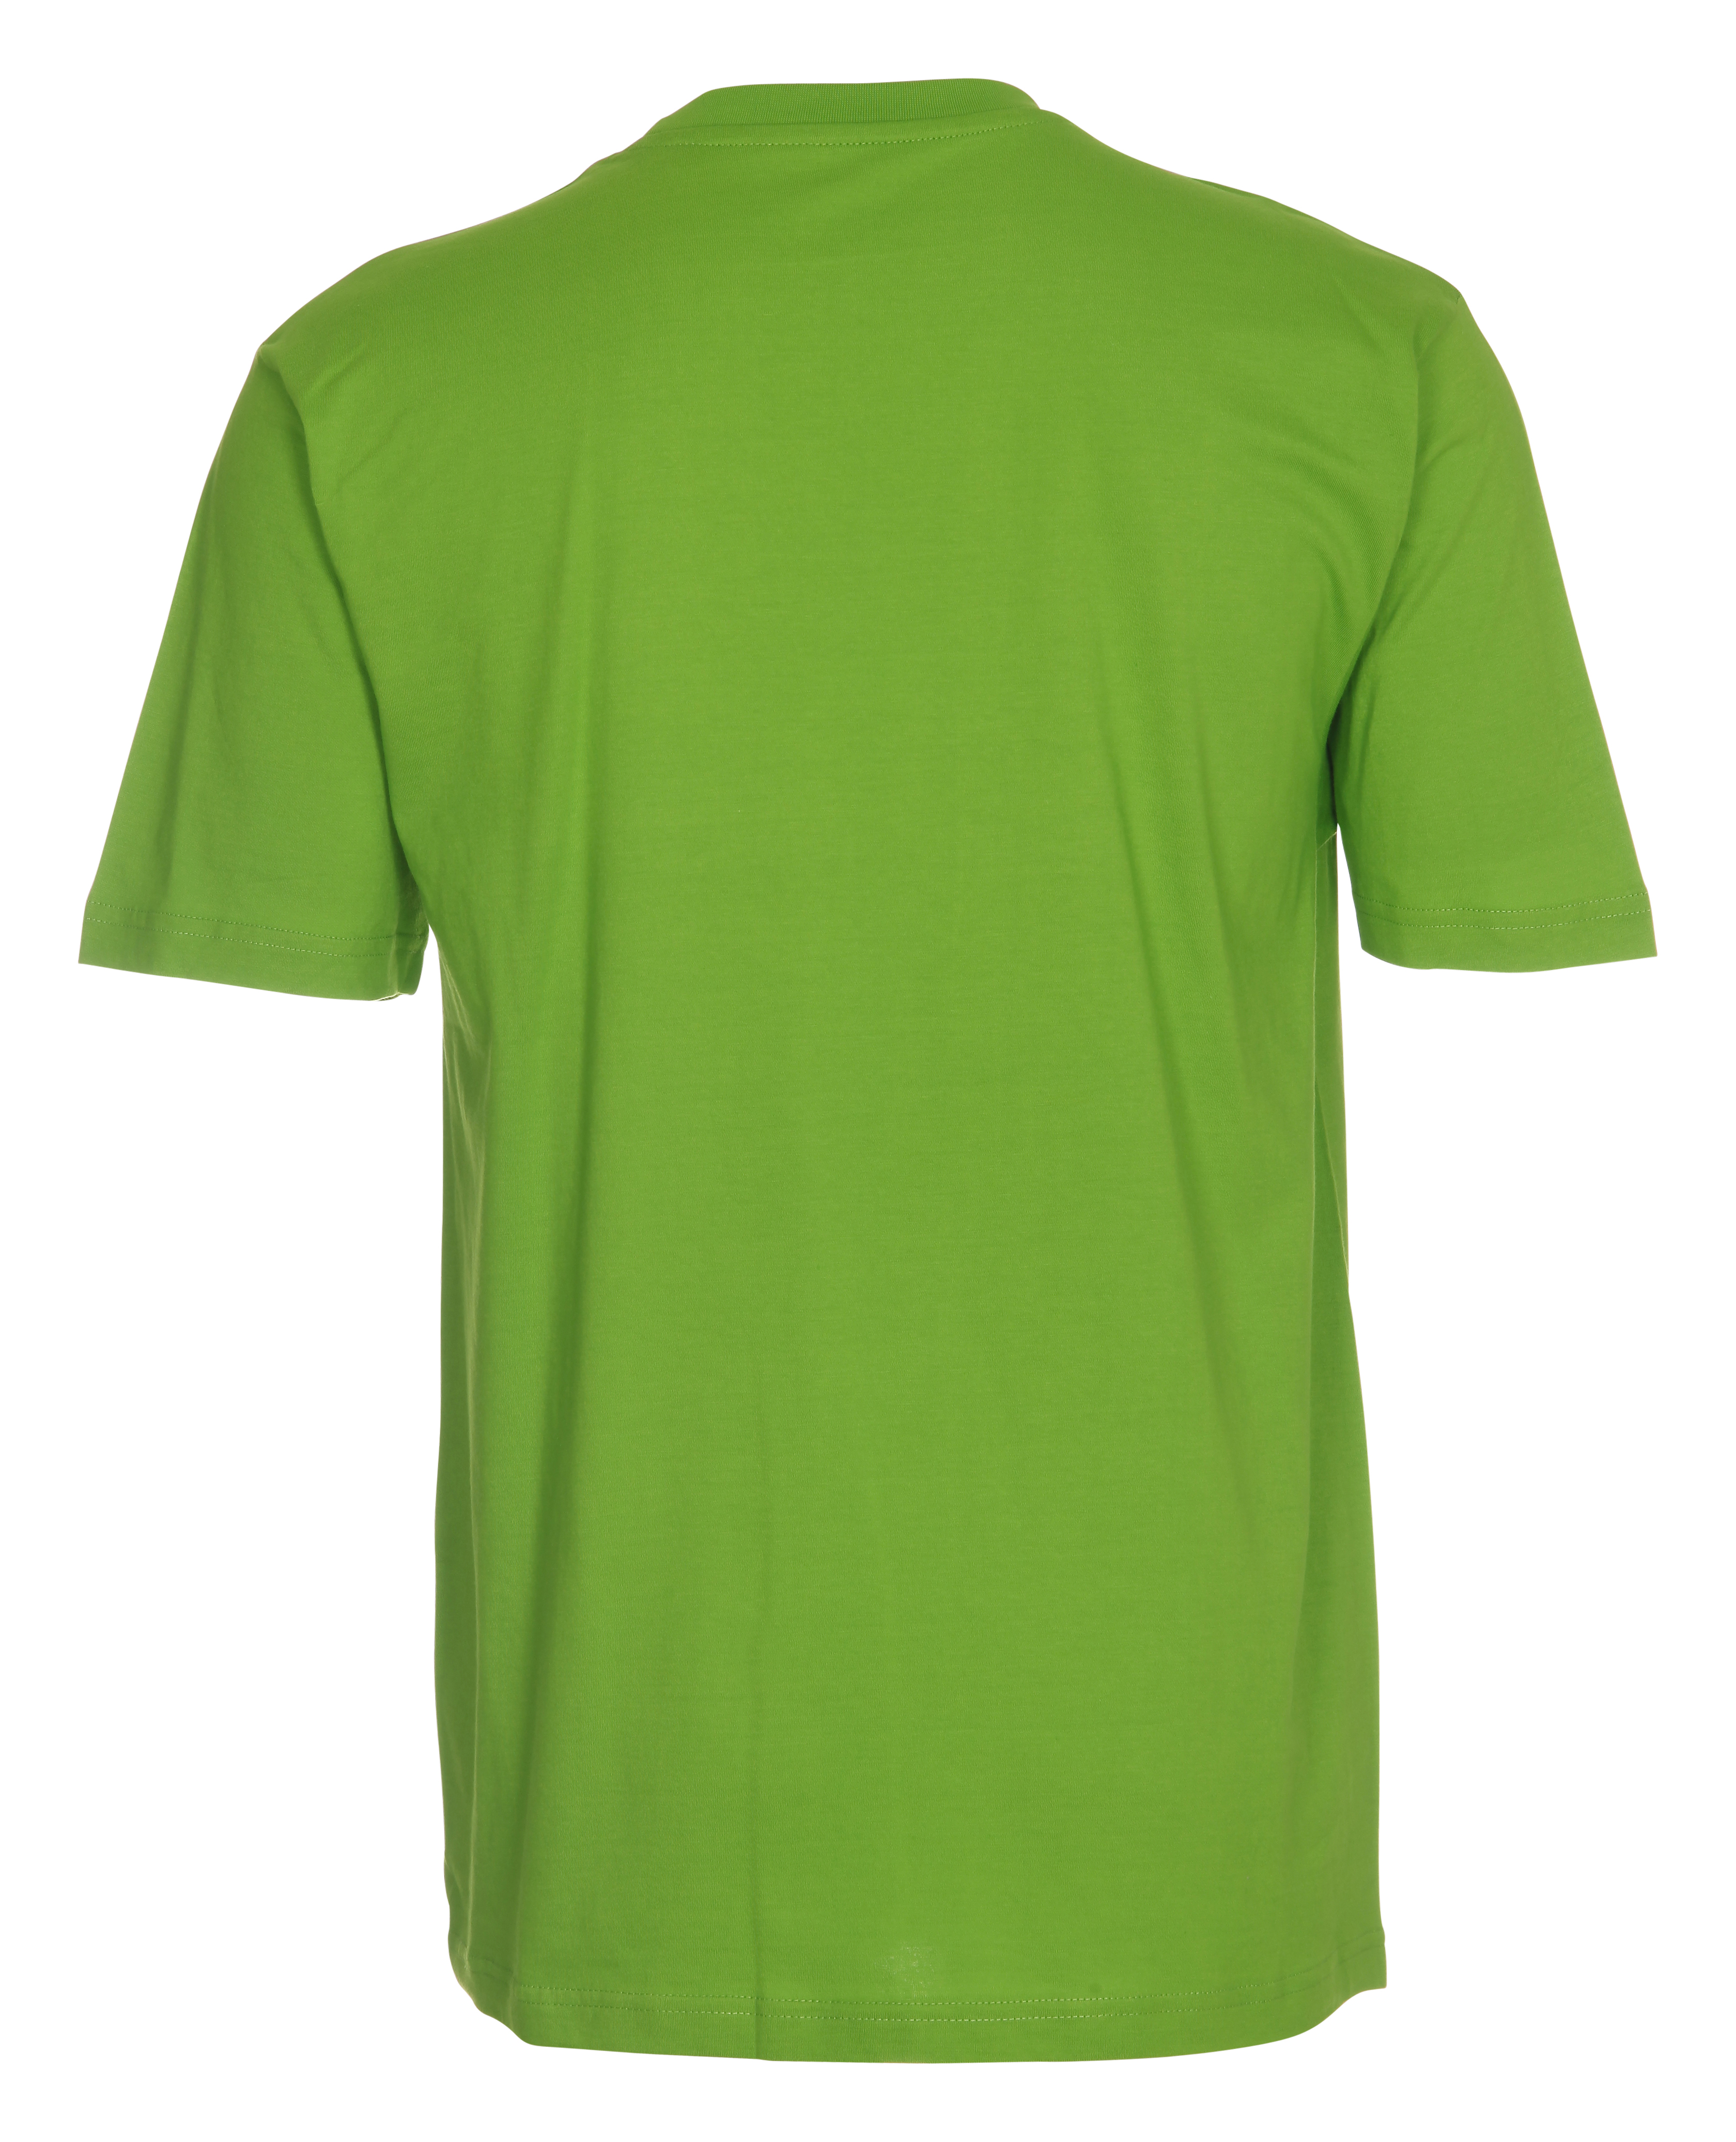 OUTzeit T-Shirt, Bio-Baumwolle, Größen XS-6XL in 31 Farben, inkl. Wunschdruck 